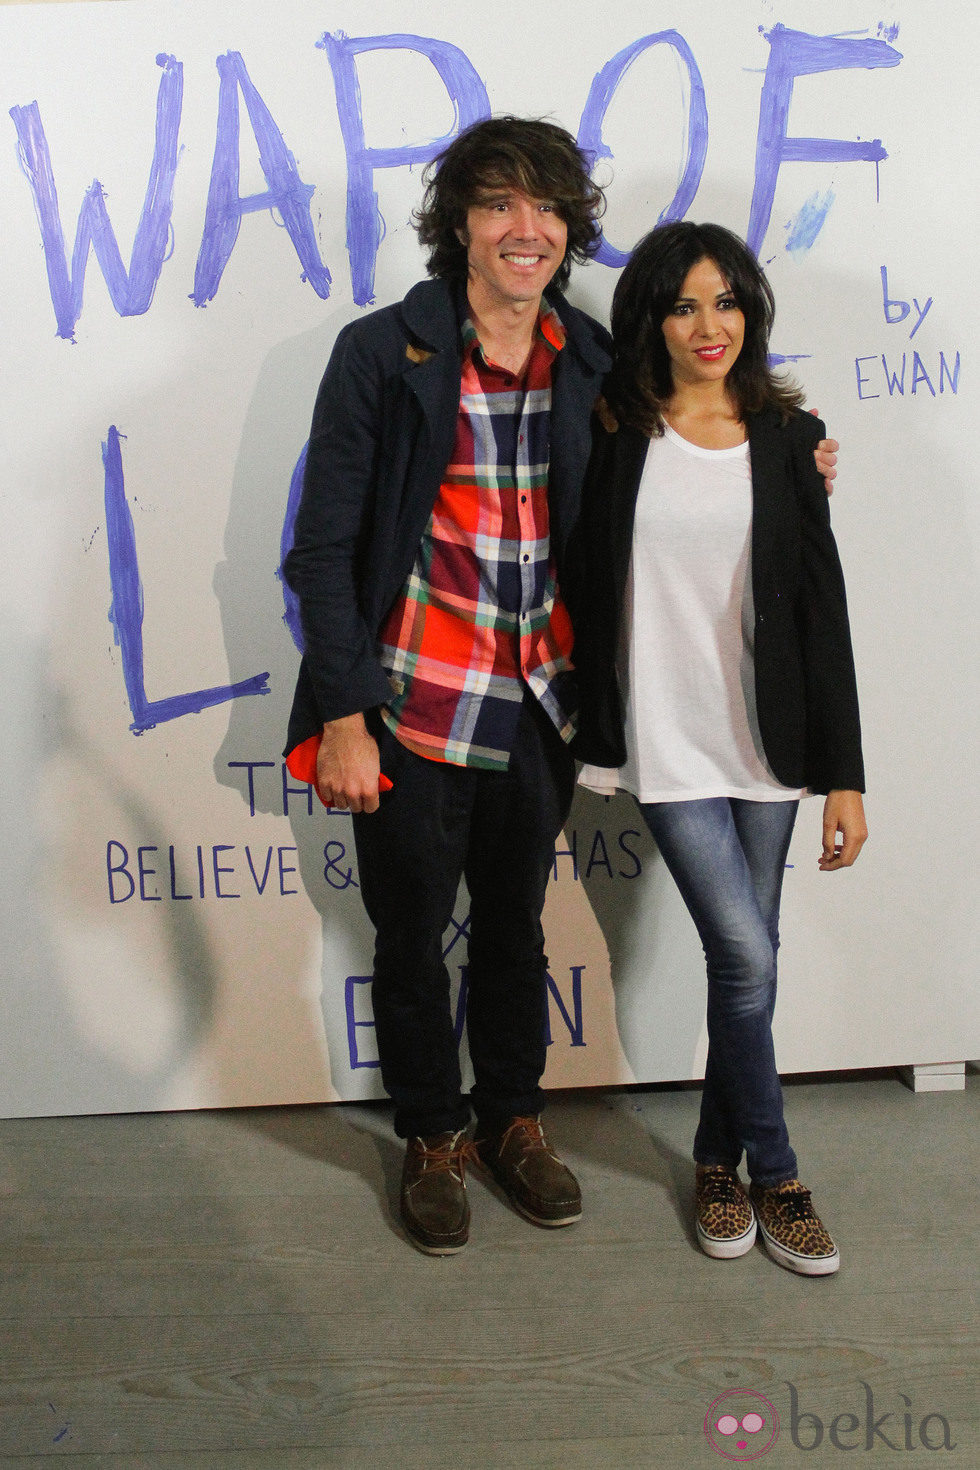 Juan Luis Suárez y Raquel del Rosario en la presentación de 'War of love' de Ewan